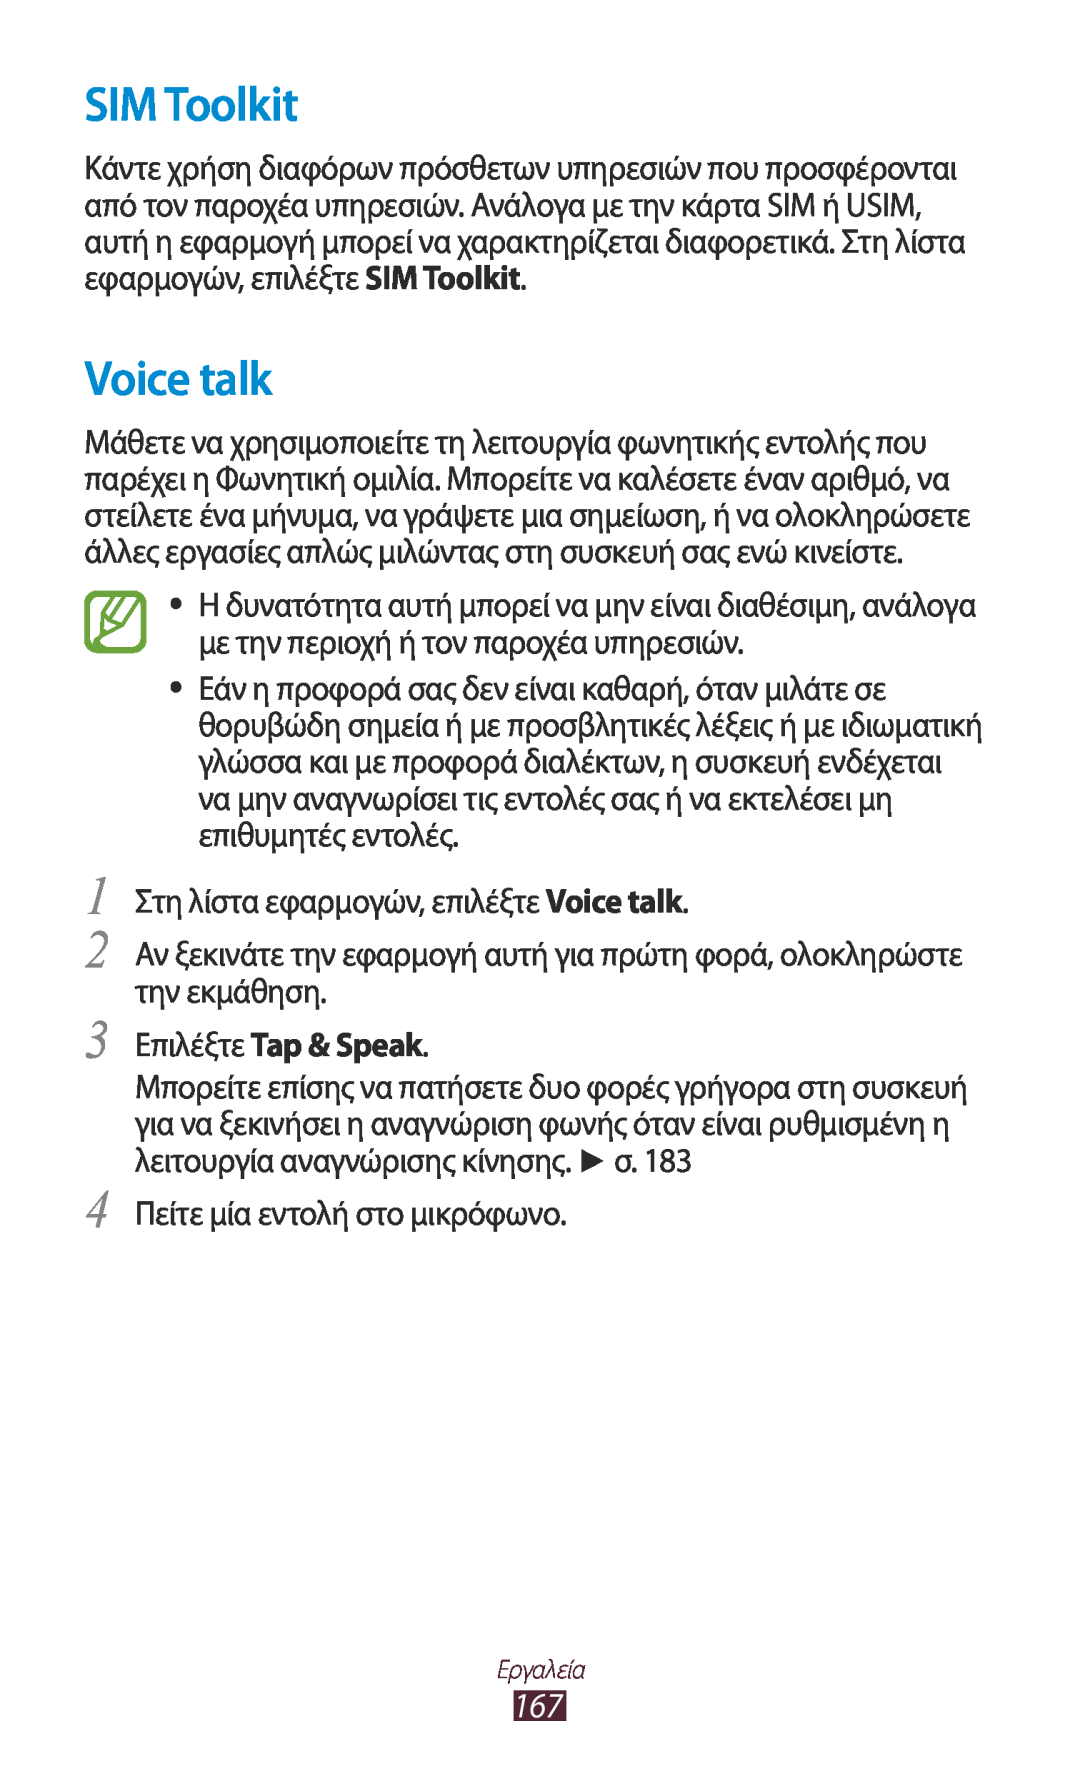 Samsung GT-N7000ZBEEUR, GT-N7000ZBAEUR, GT-N7000RWAEUR, GT-N7000RWAVGR manual SIM Toolkit, Voice talk, Επιλέξτε Tap & Speak 